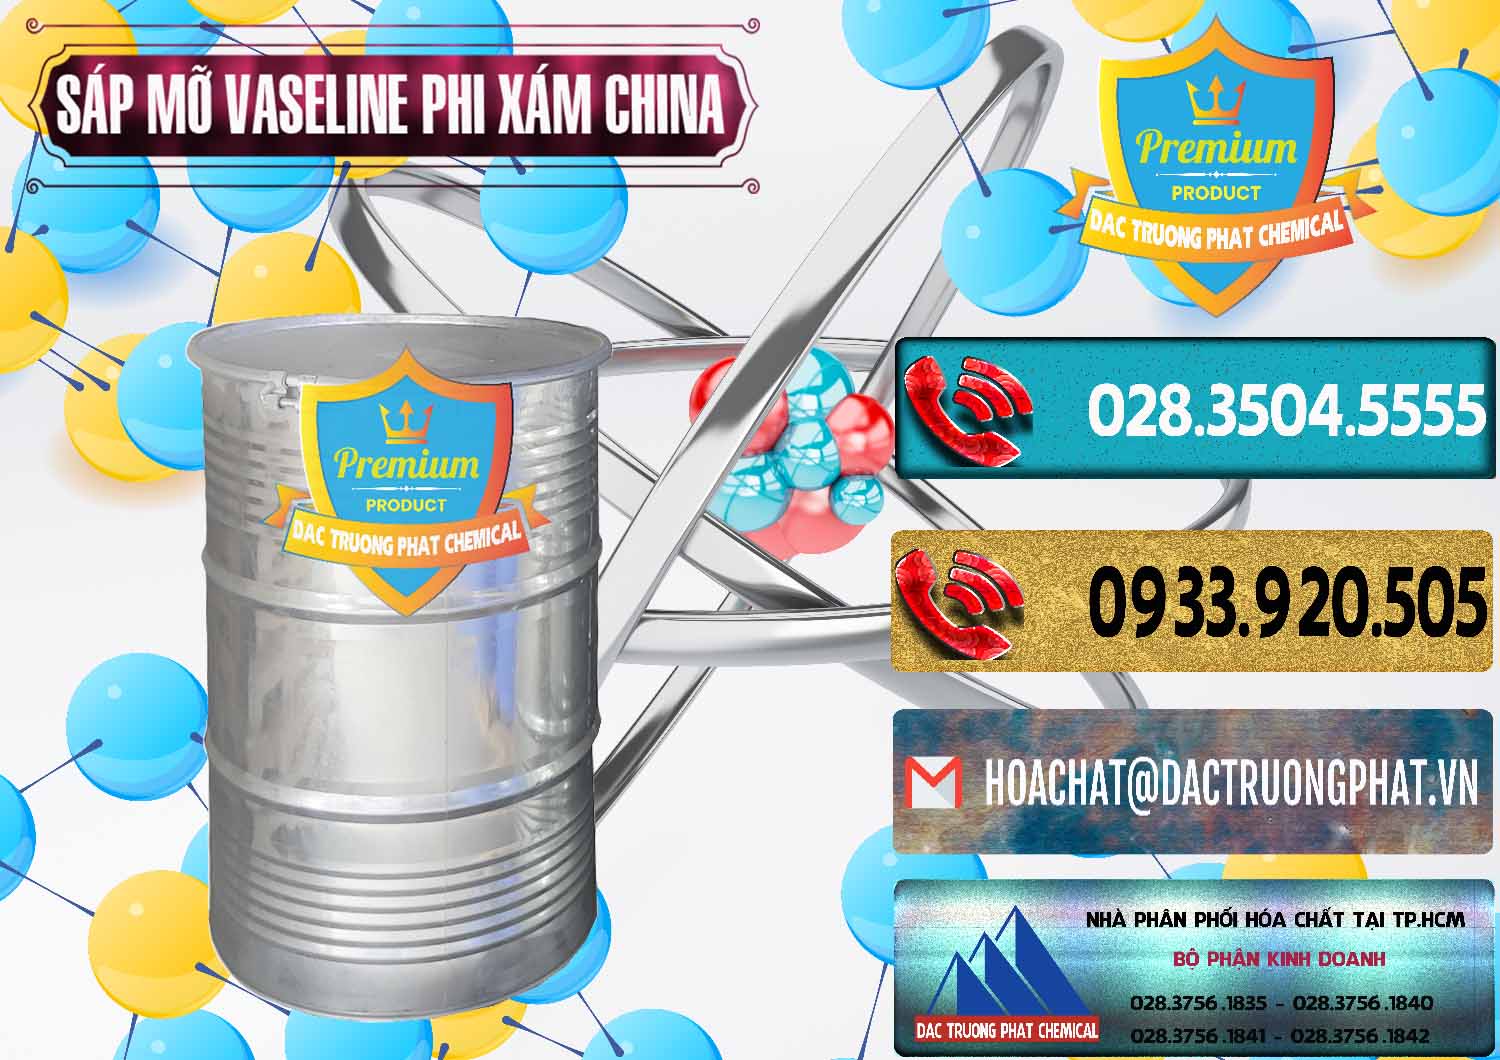 Bán - cung ứng Sáp Mỡ Vaseline Phi Xám Trung Quốc China - 0291 - Công ty phân phối & cung ứng hóa chất tại TP.HCM - hoachatdetnhuom.com